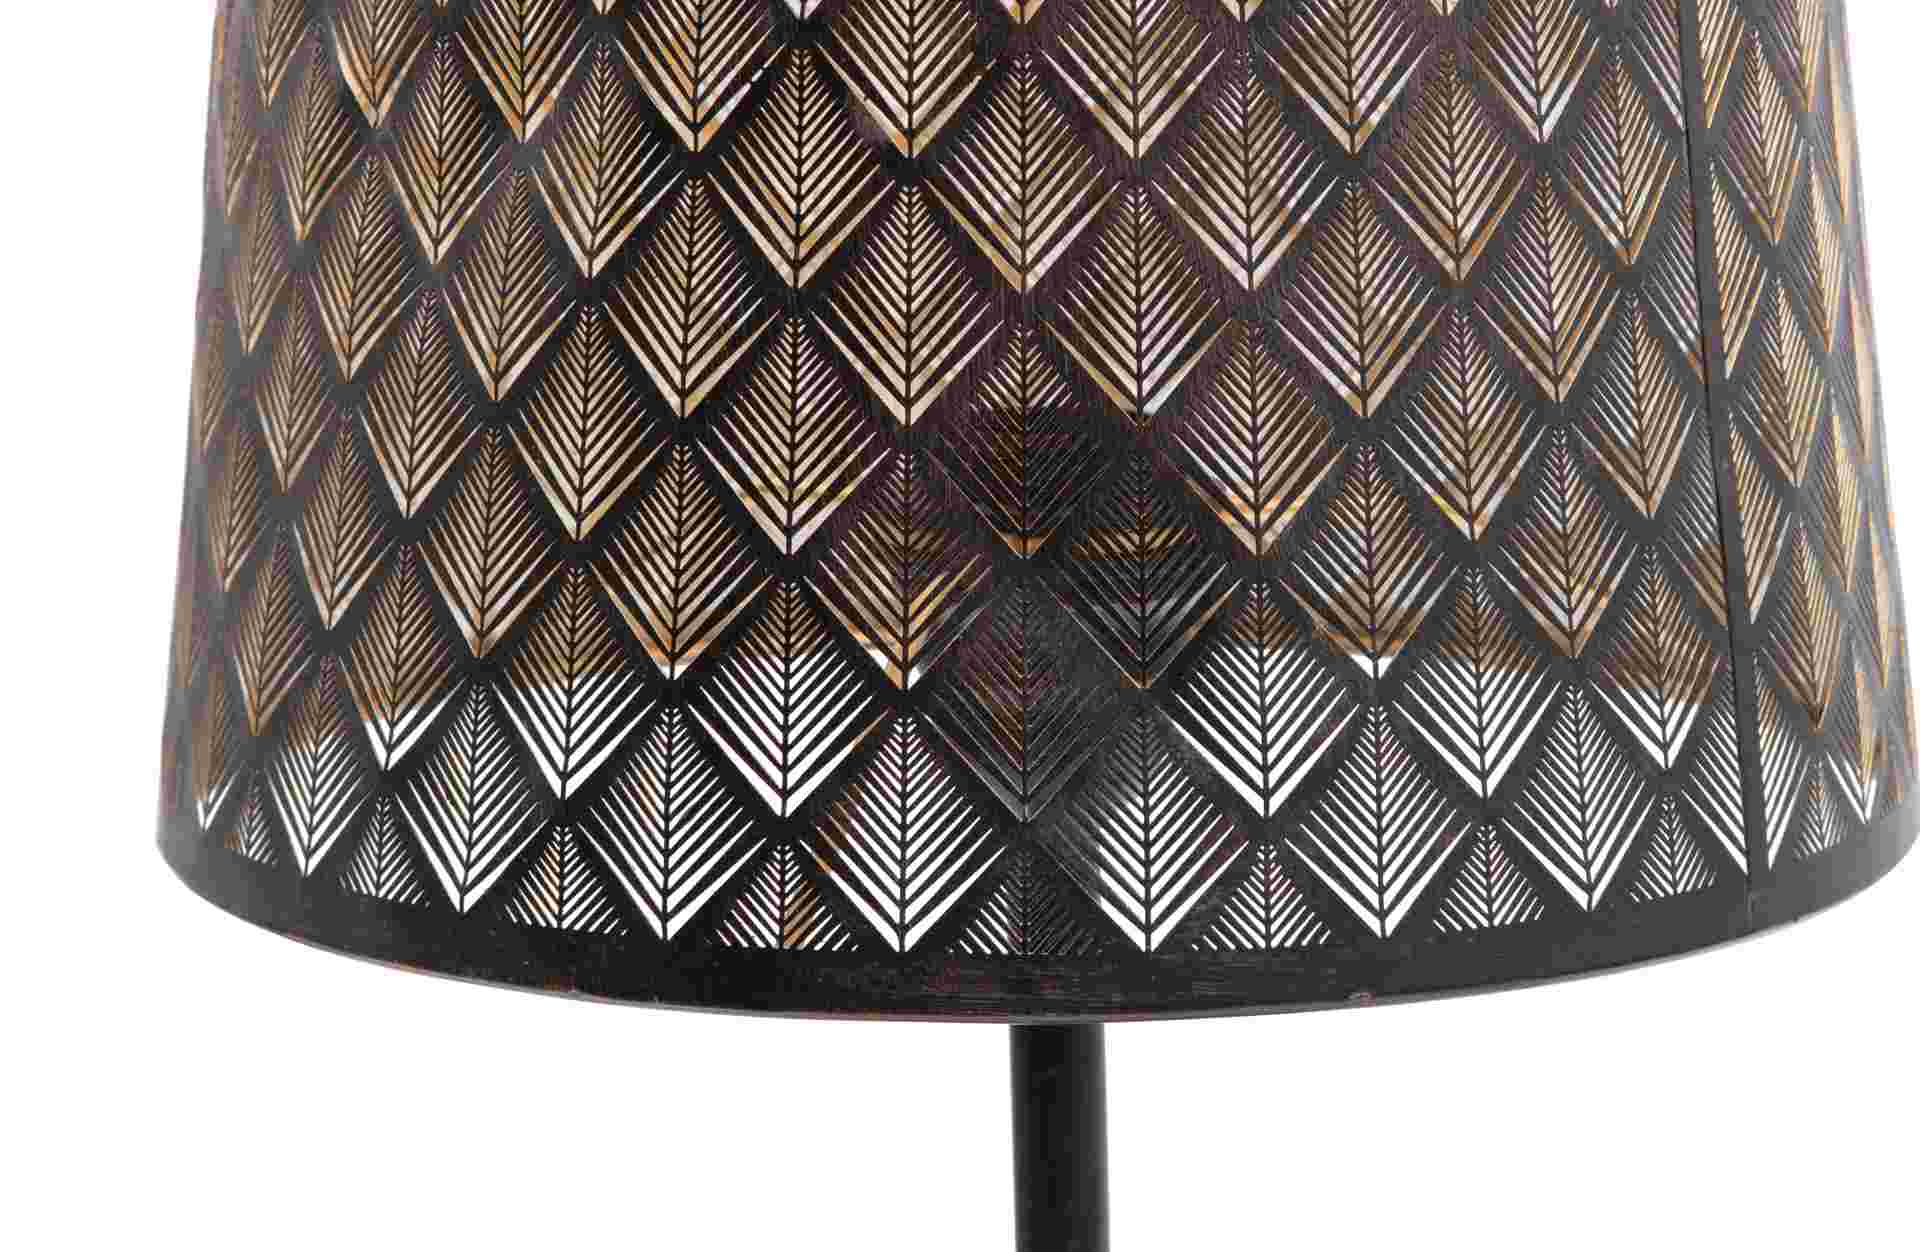 Die Tischleuchte Kars wurde aus Metall gefertigt, welches einen schwarzen aber auch Anthrazit Farbton besitzt. Dies unterstreicht das moderne und industrielle Design der Lampe.